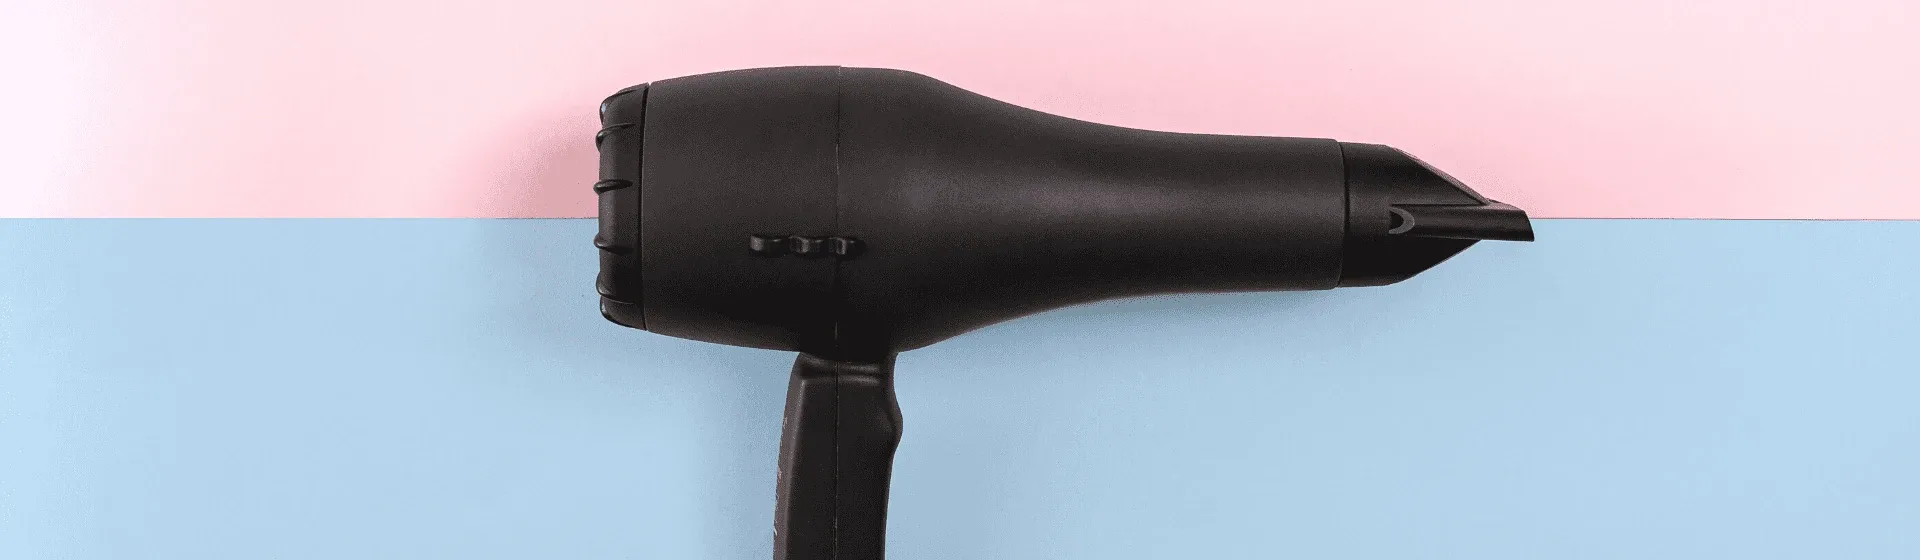 Melhor secador de cabelo Taiff de 2022: 7 modelos para comprar